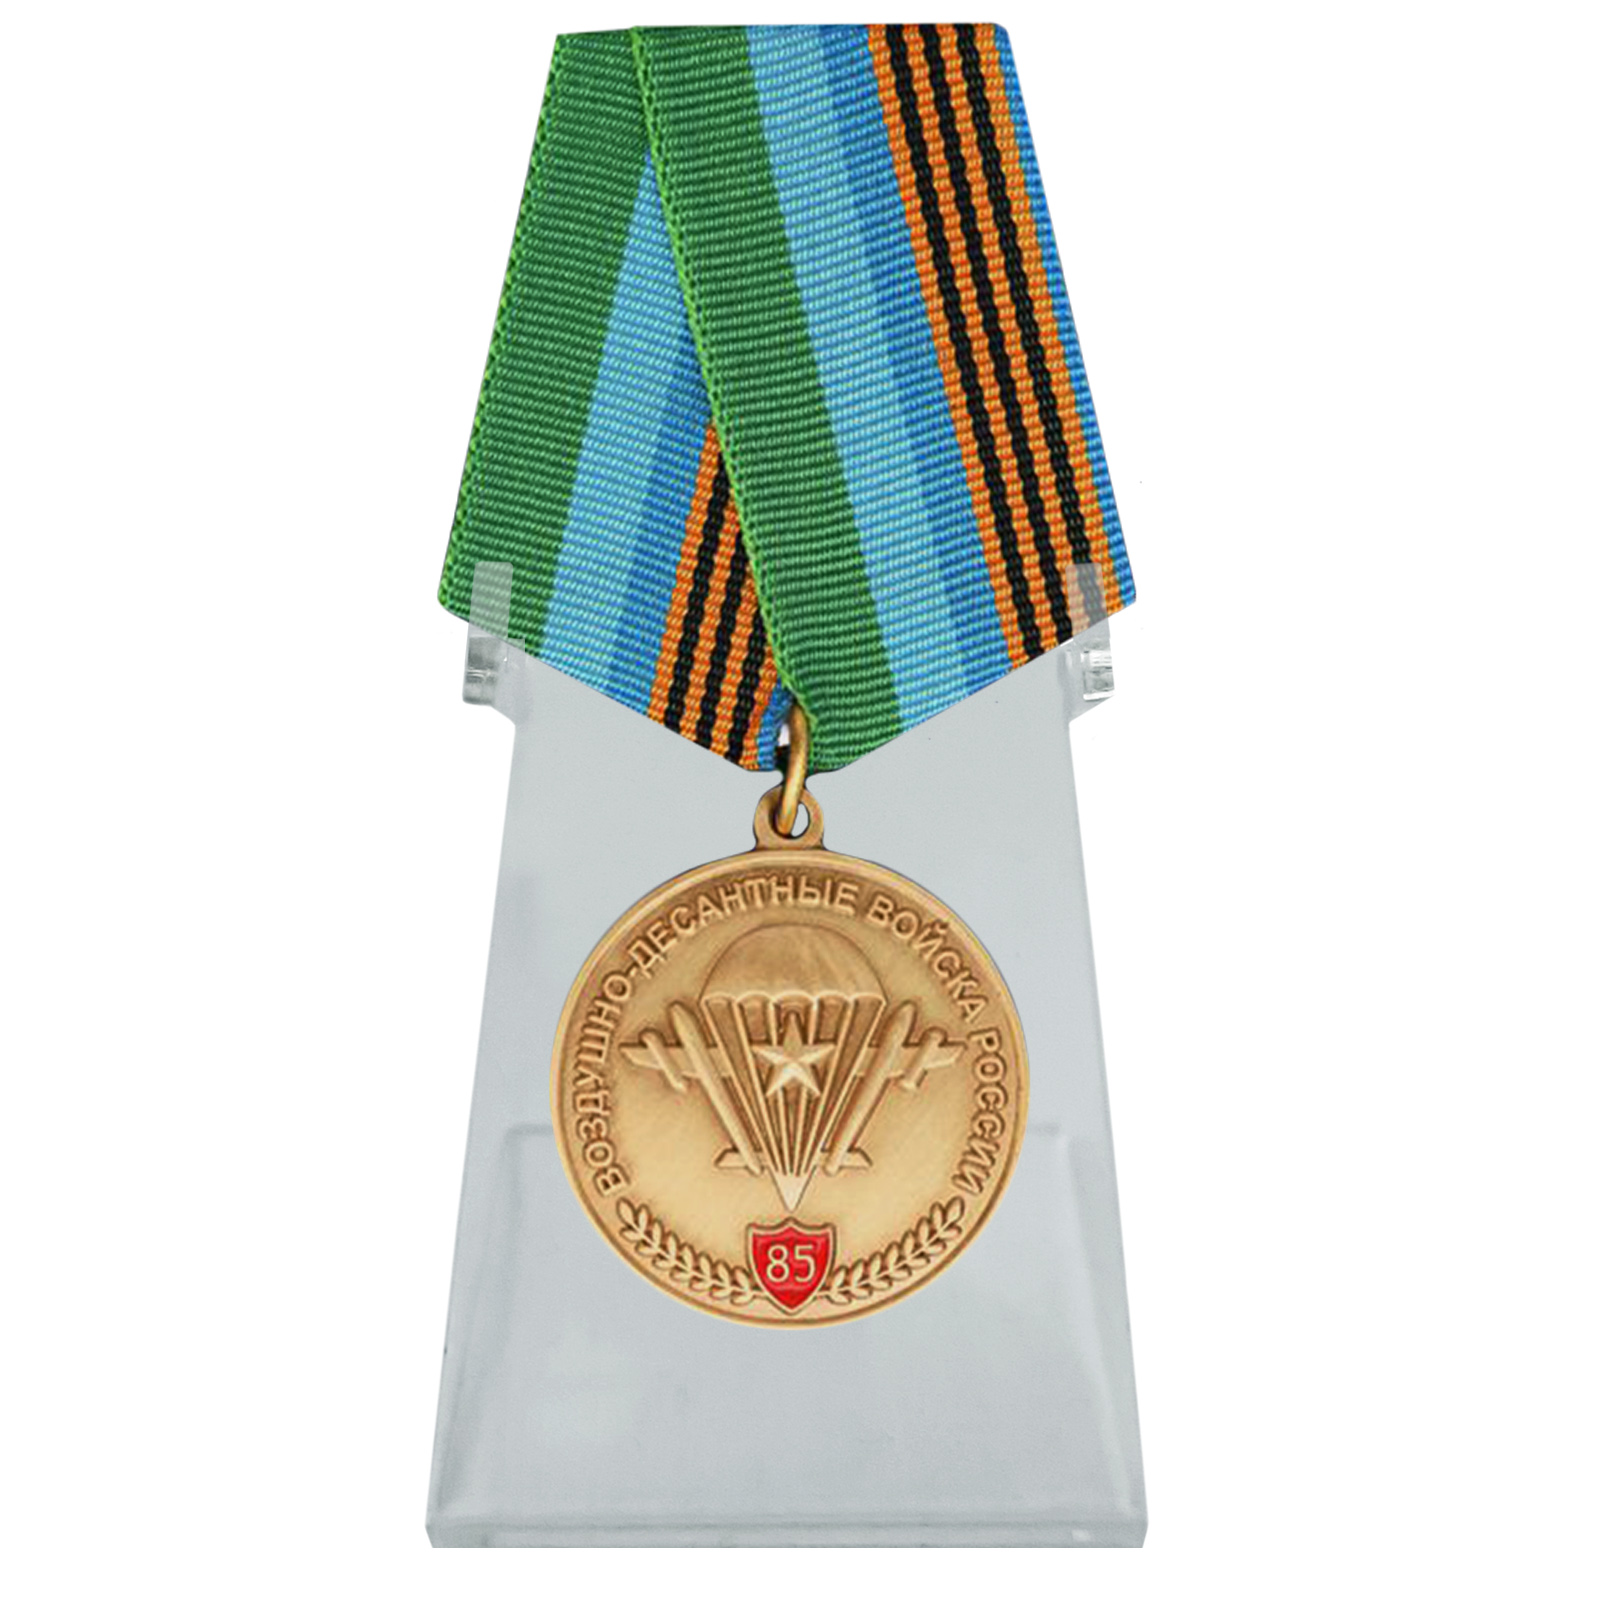 Купить медаль ВДВ с девизом десанта на подставке выгодно онлайн